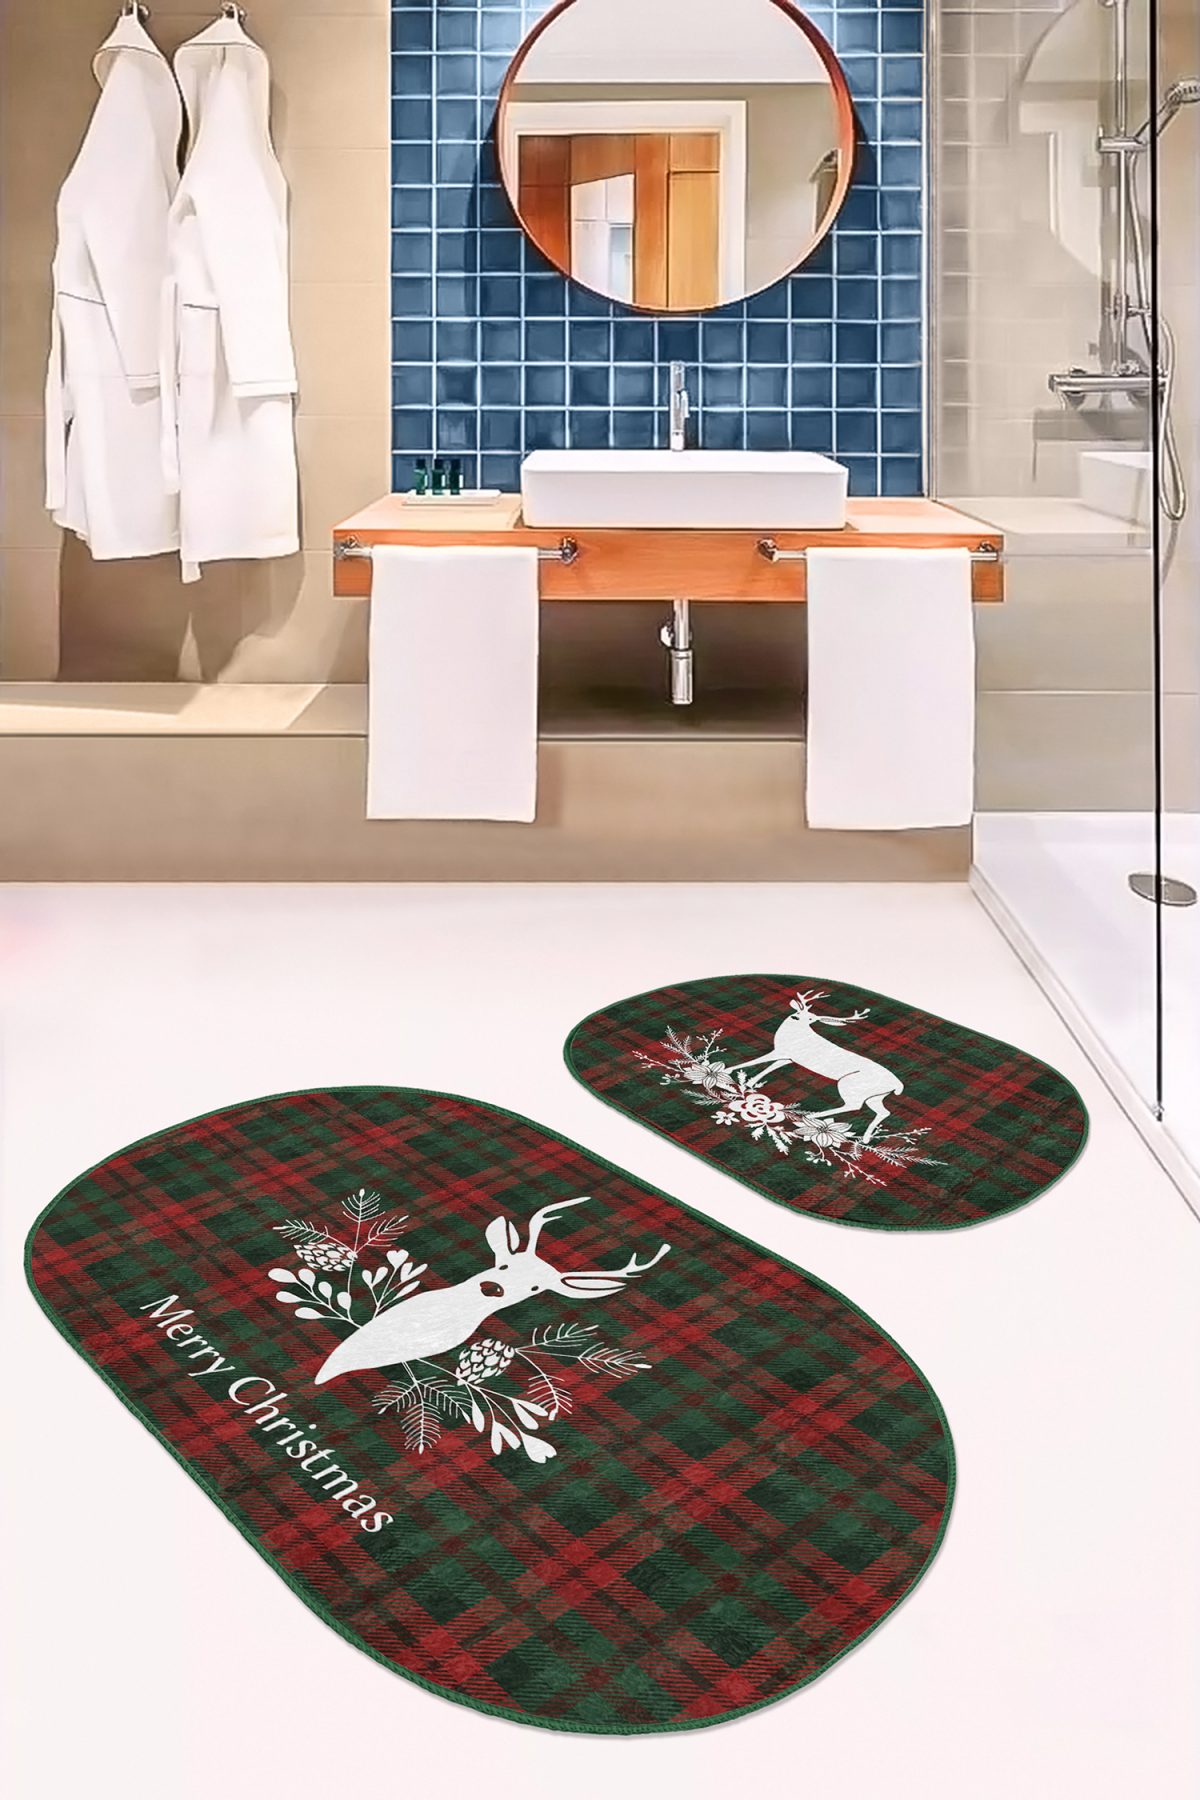 Mery Christmas Temalı Geyik Tasarımlı Dijital Baskılı 2'li Oval Kaymaz Tabanlı Banyo & Mutfak Paspas Takımı Realhomes